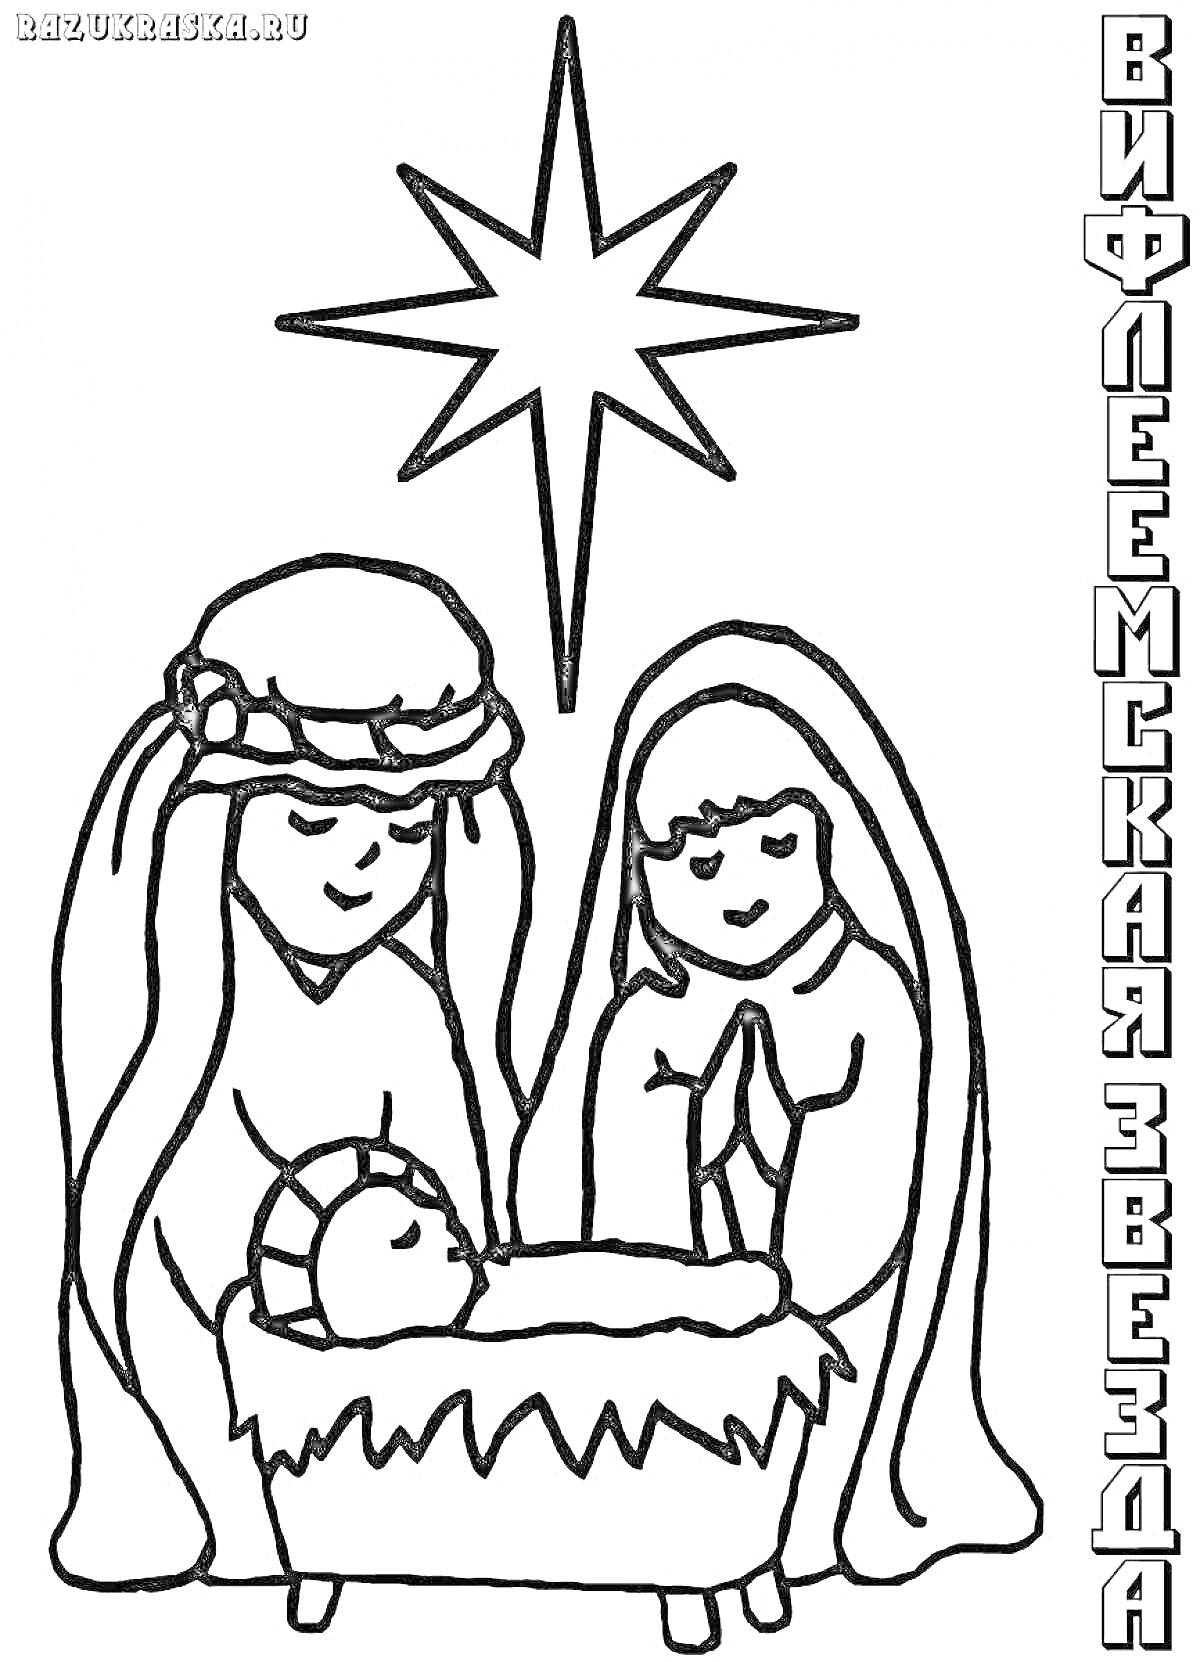 Вифлеемская звезда над новорожденным Иисусом в яслях, окруженным Марией и Иосифом